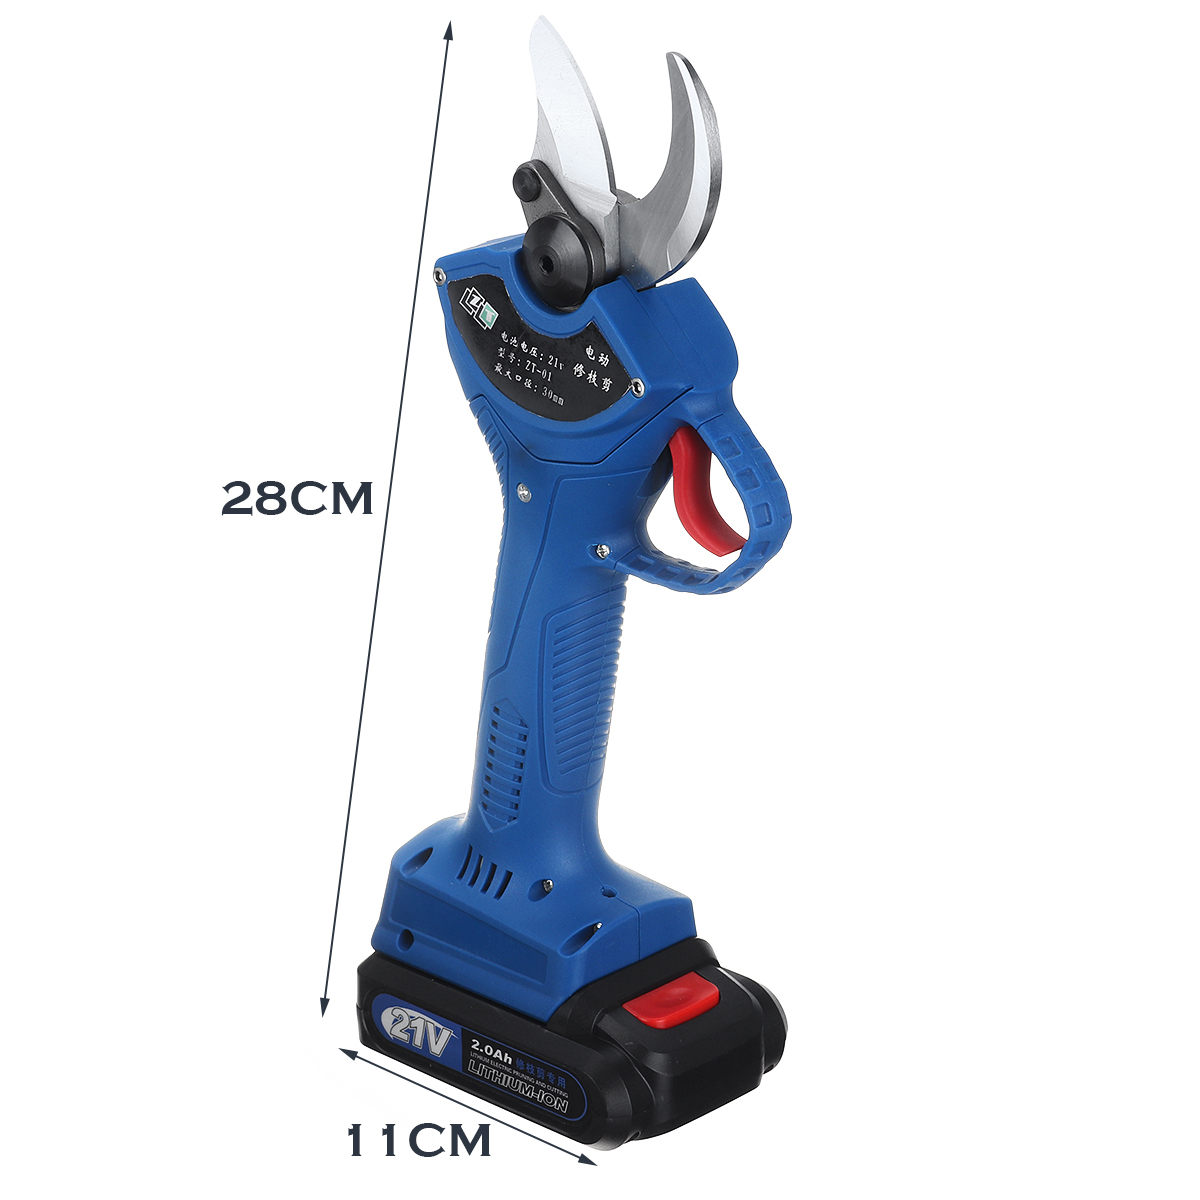 21V-Cordless-Electric-Branch-Scissor-Pruning-Shear-Pruner-Ratchet-Cutter-Battery-Garden-Tool-1687133-11